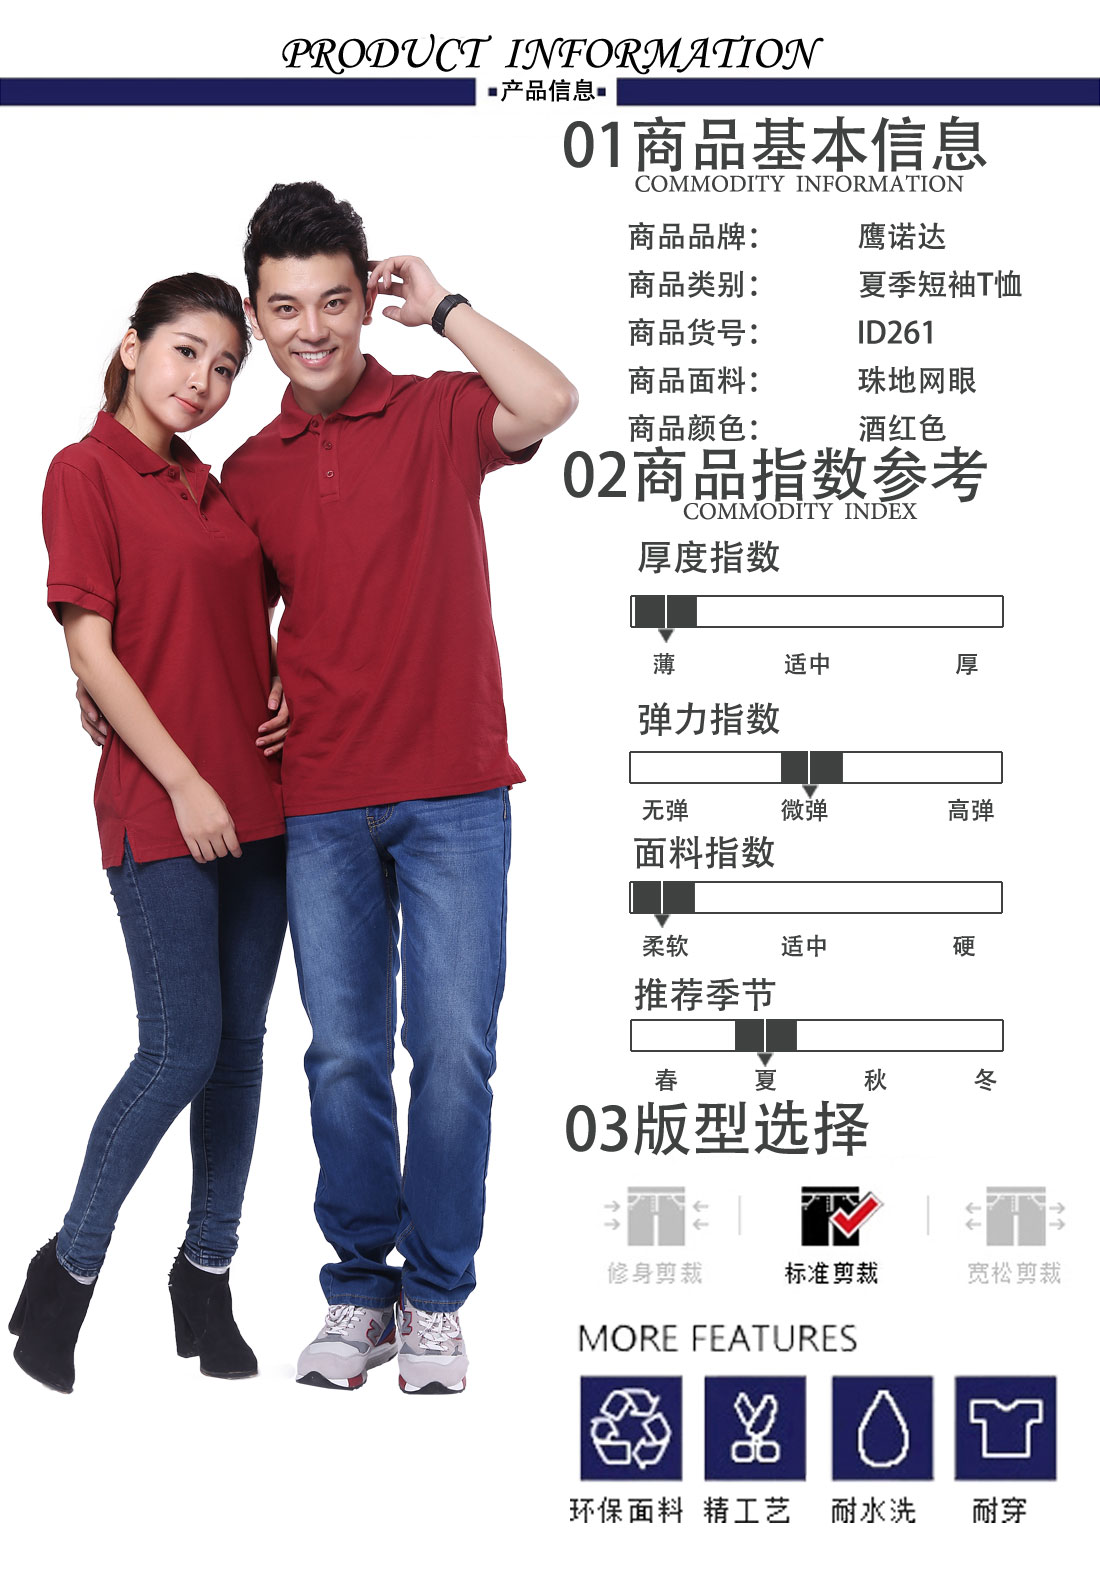 北京纯棉t恤衫商品基本信息、指数参考、版型选择